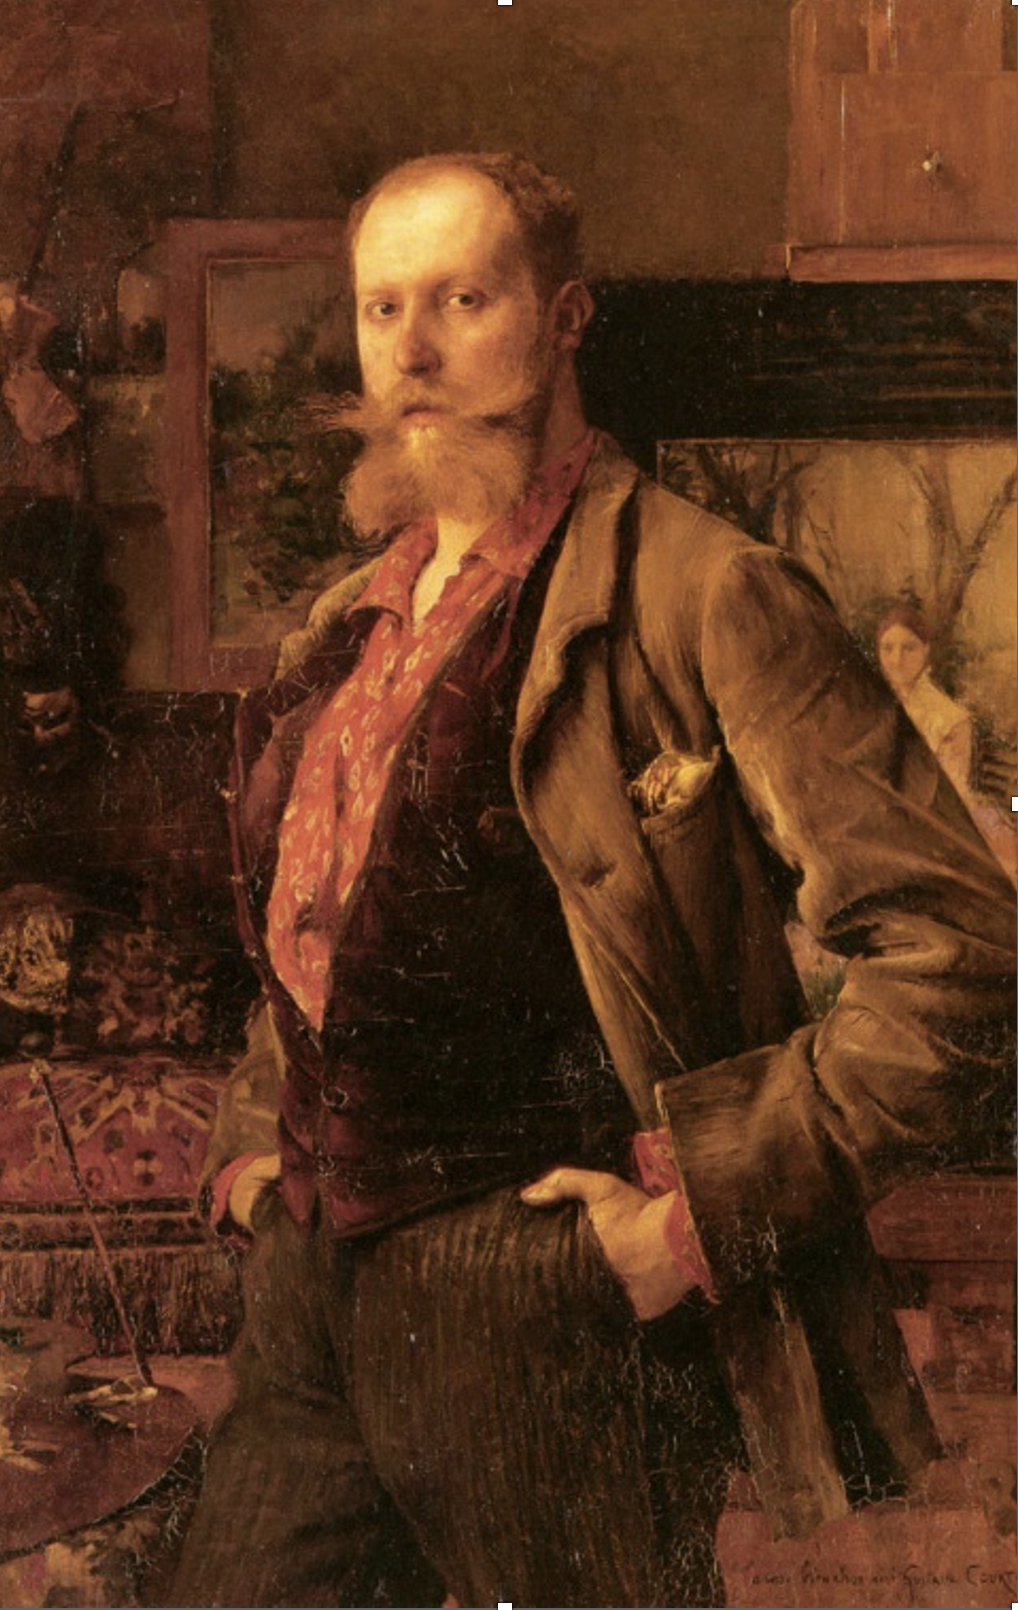 Dagnan-Bouveret, Portrait de Gustave Courtois, 1884, huile sur toile, 122 x 82 cm, Besançon, Musée des Beaux-Arts et d’Archéologie